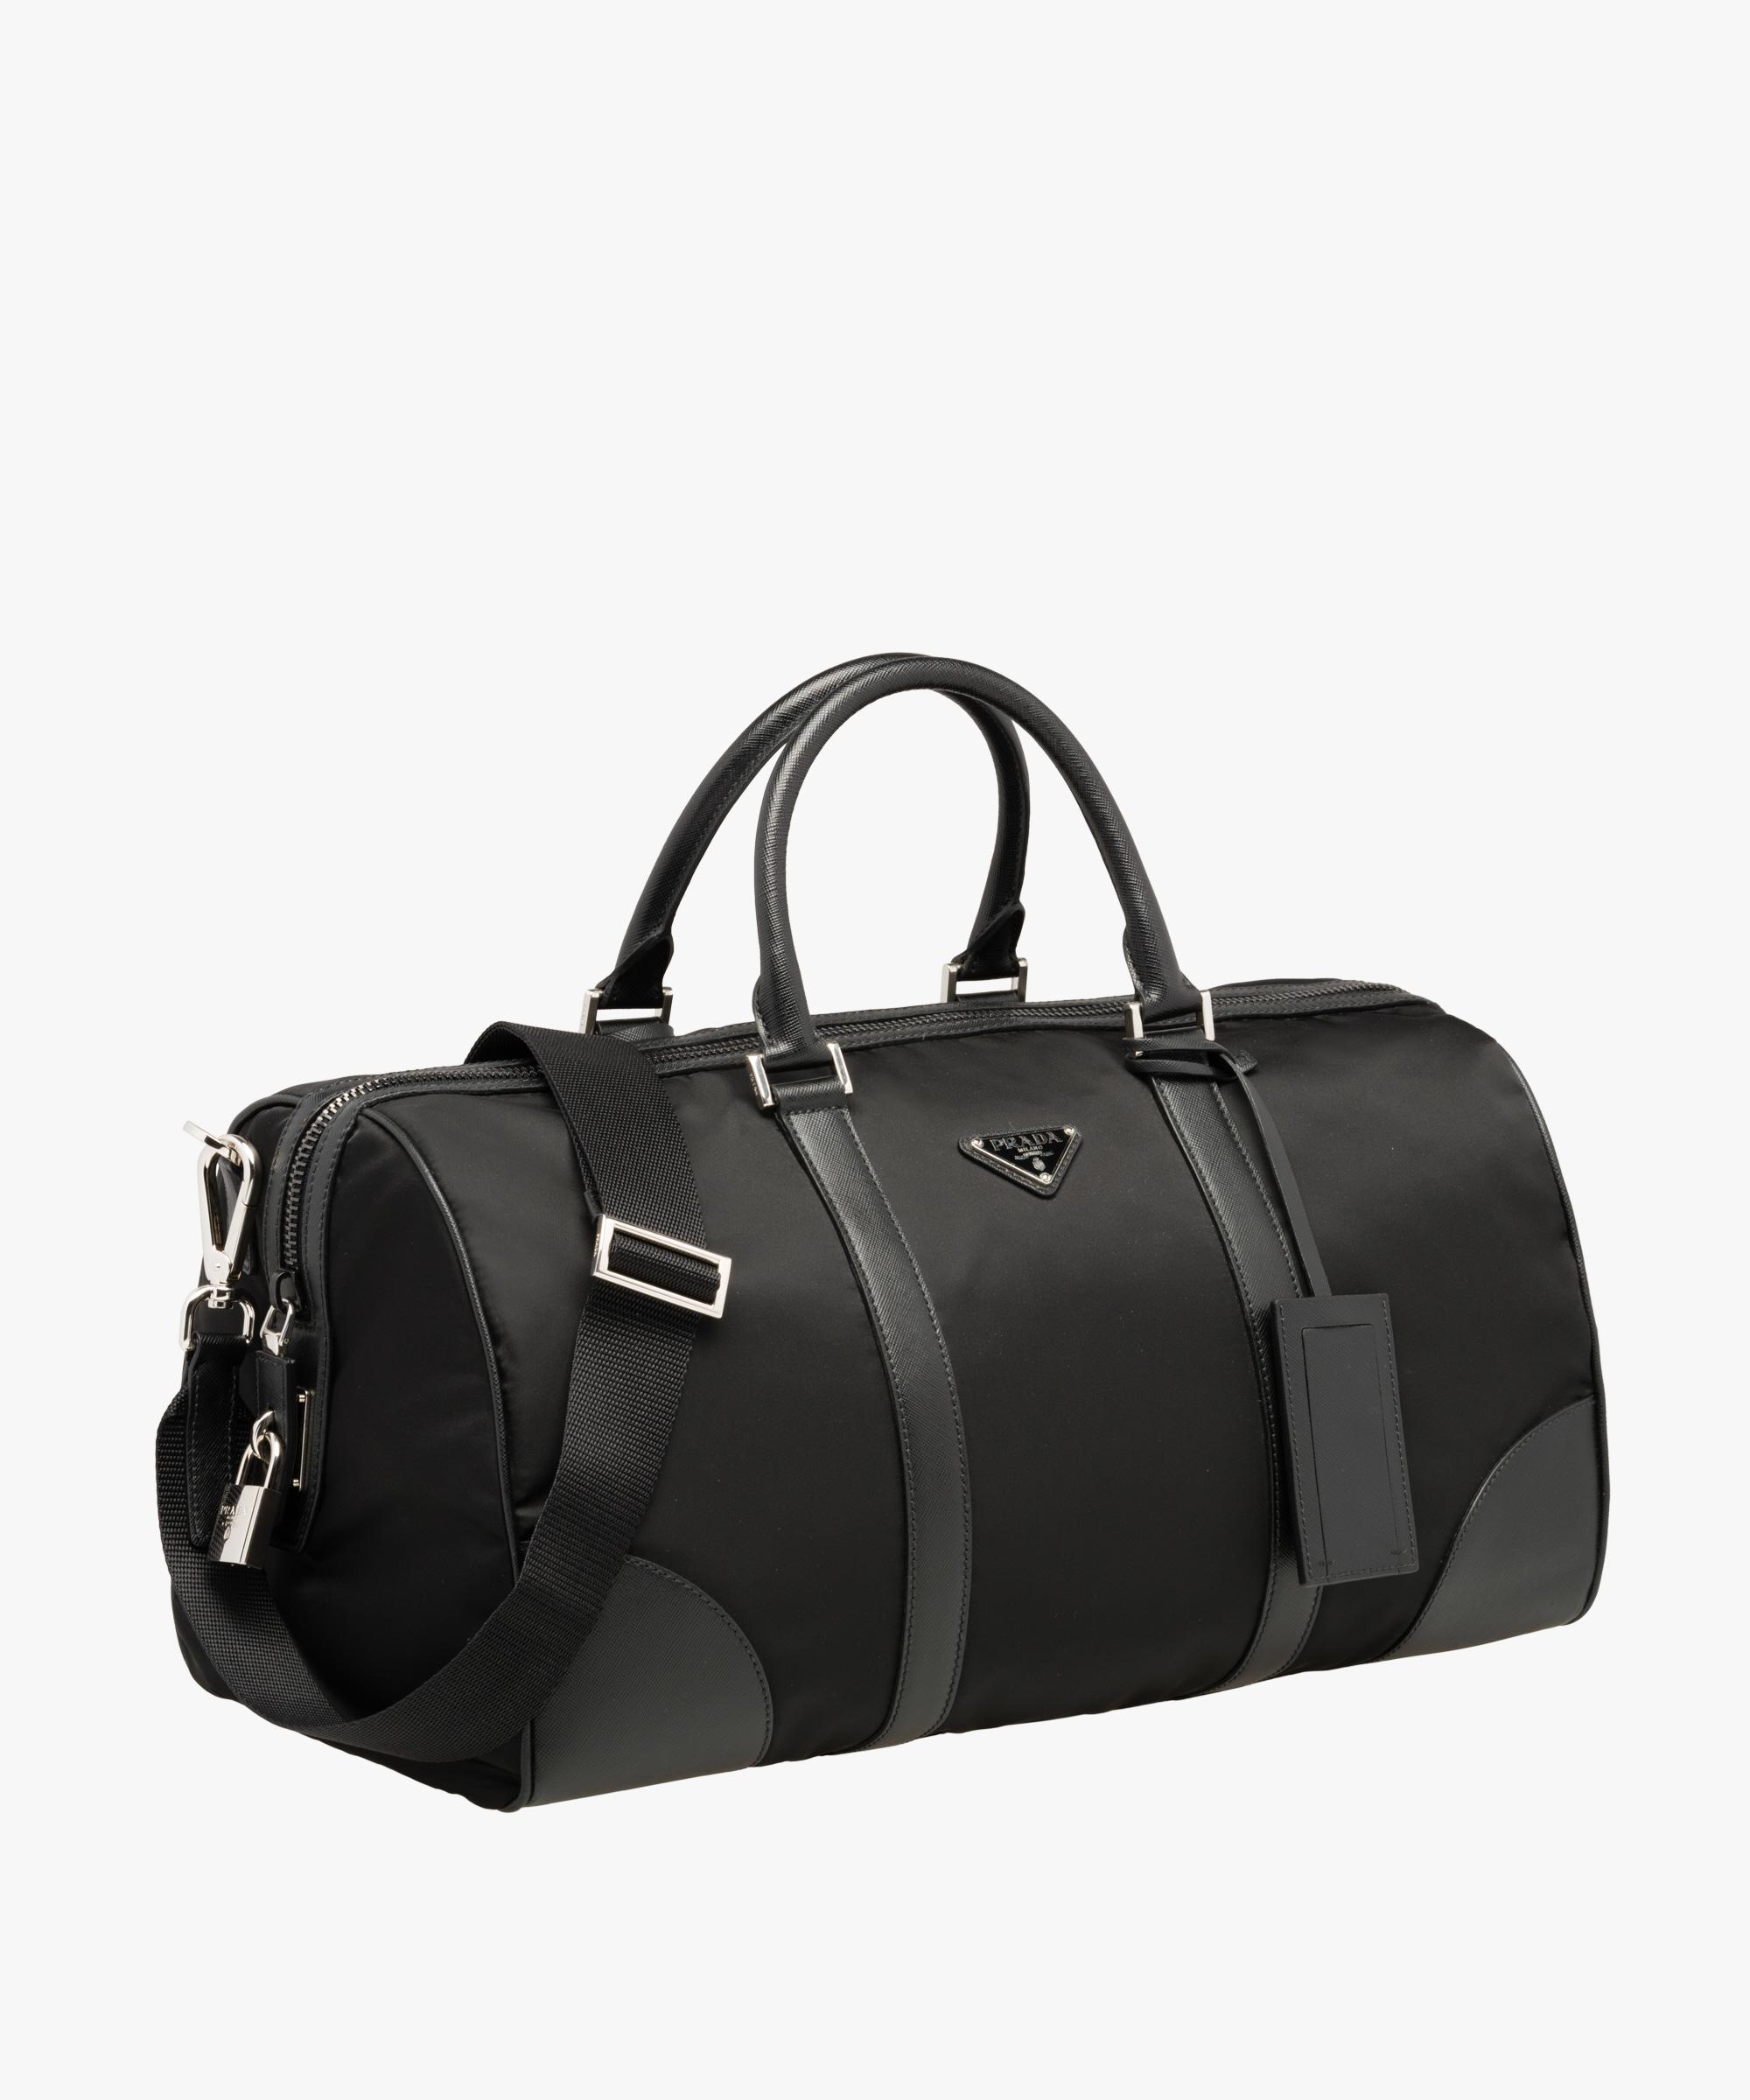 Prada Leather Weekender Bag in Black for Men - Lyst